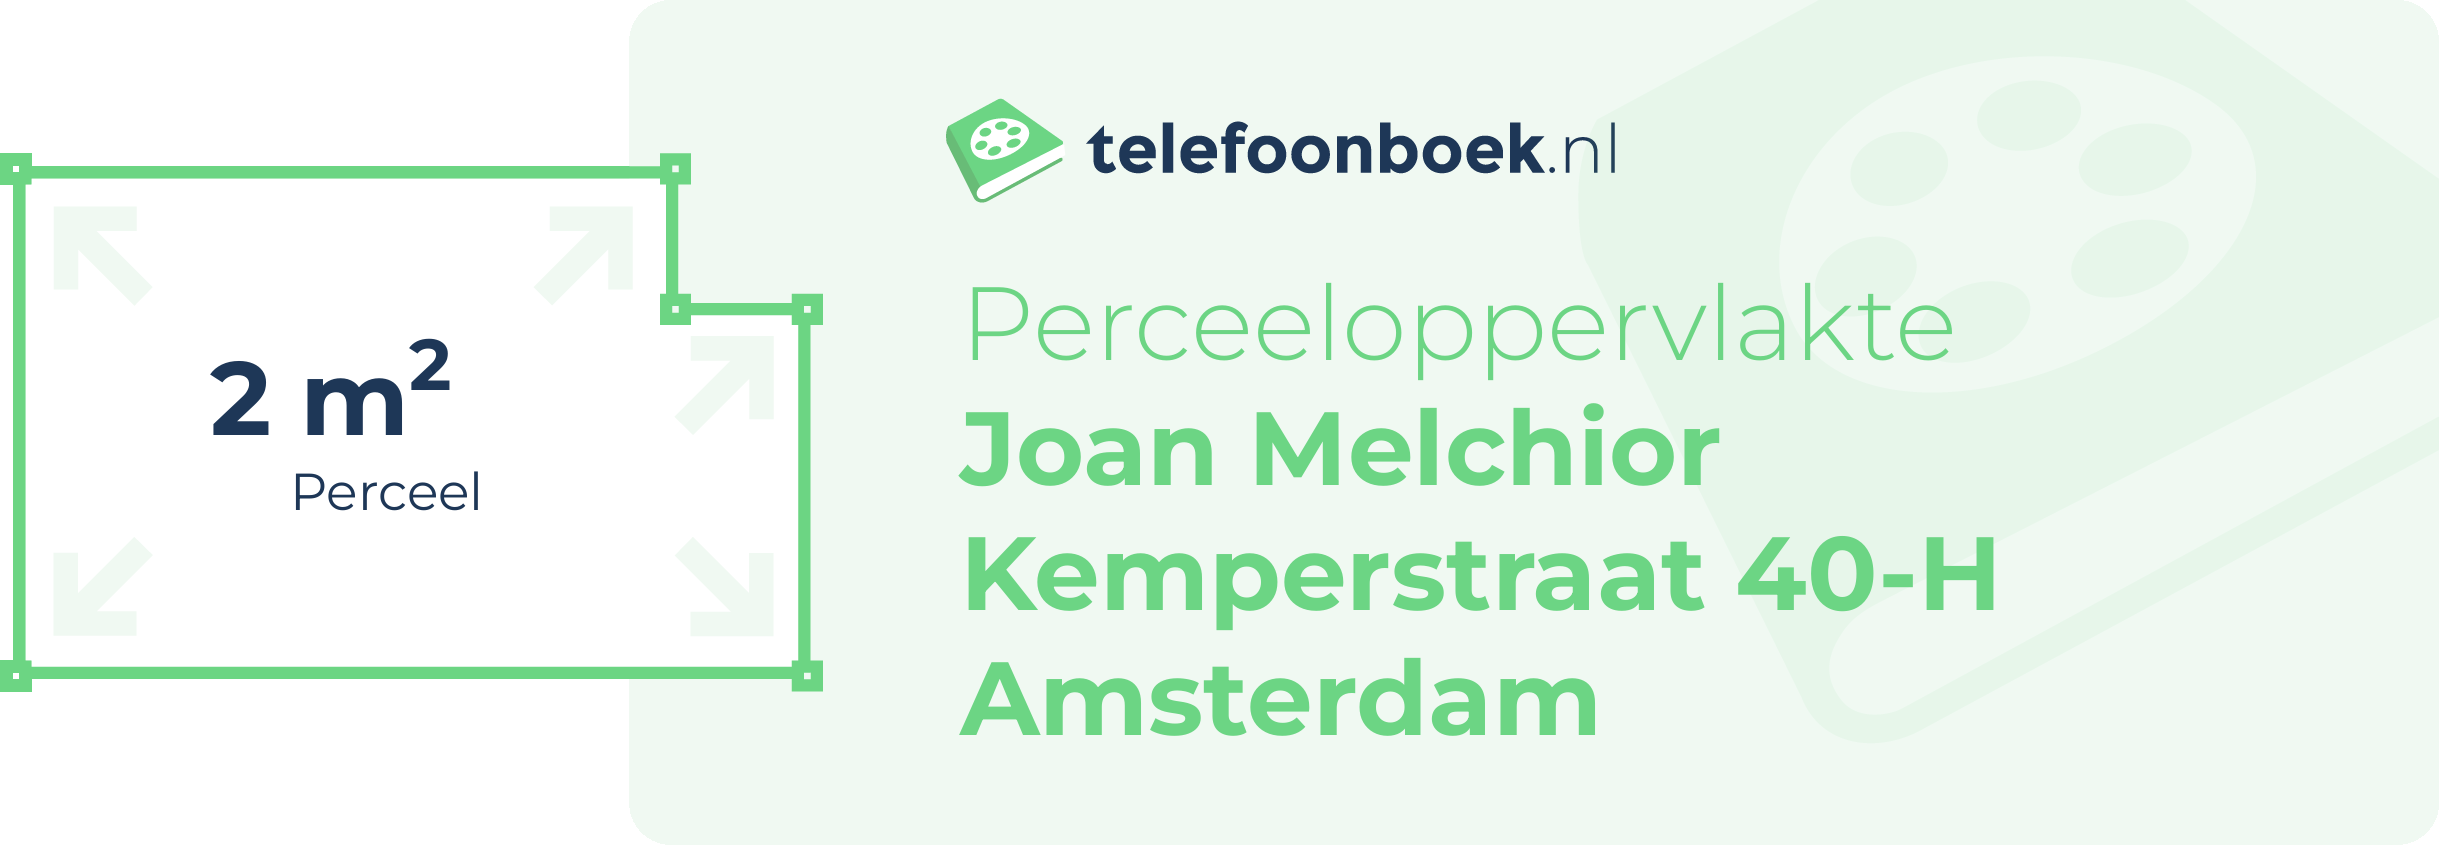 Perceeloppervlakte Joan Melchior Kemperstraat 40-H Amsterdam